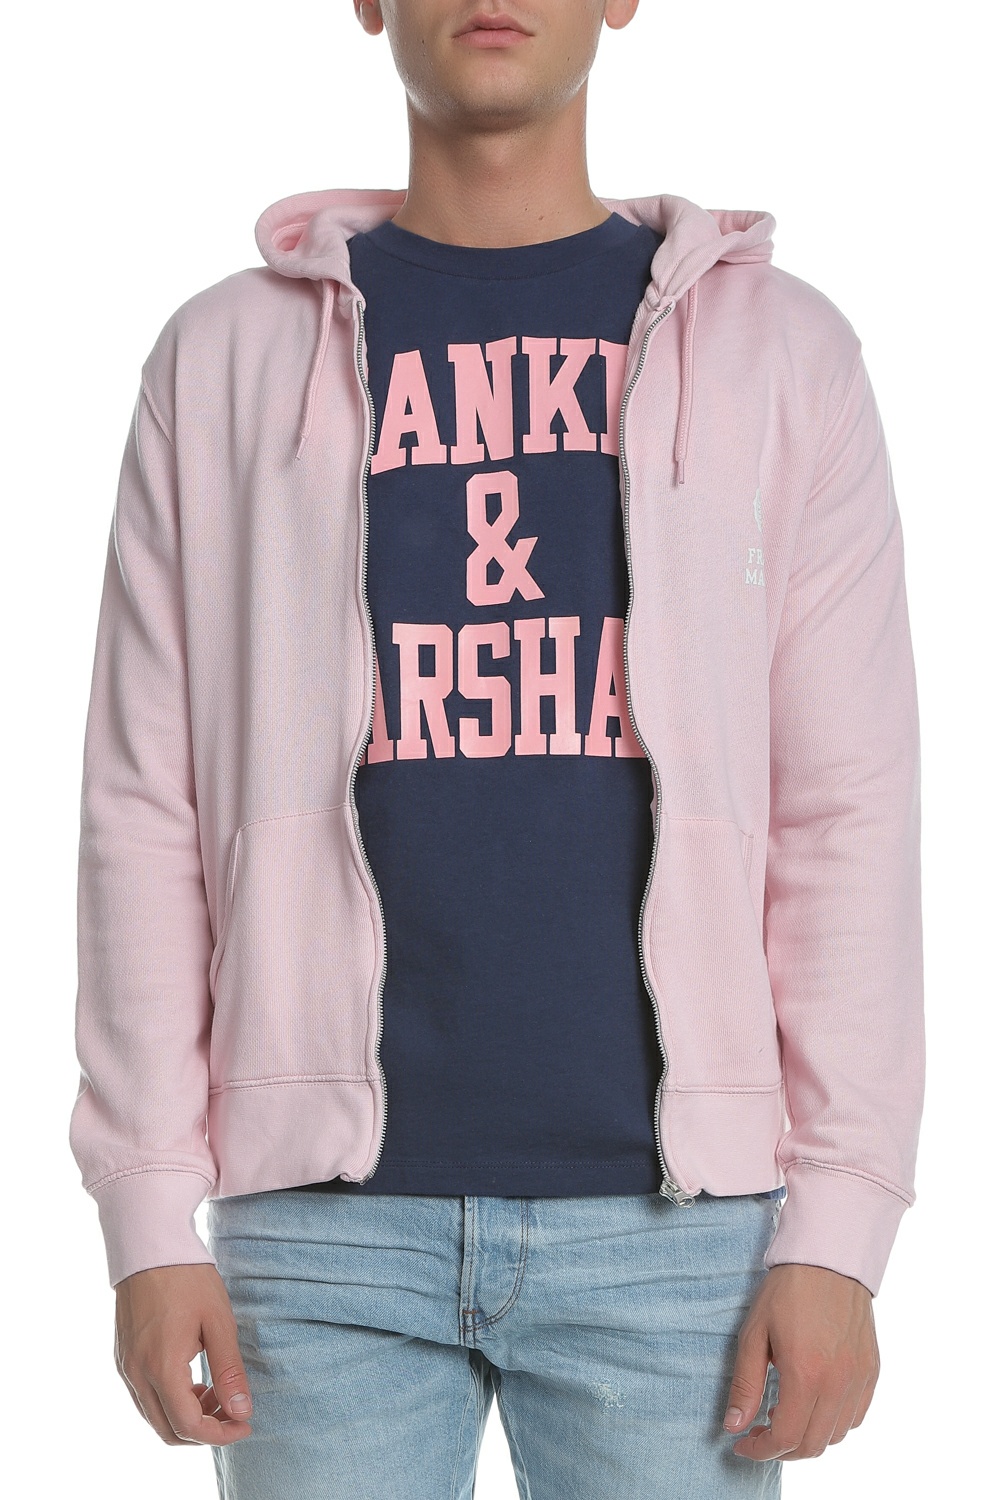 Ανδρικά/Ρούχα/Φούτερ/Ζακέτες FRANKLIN & MARSHALL - Ανδρική φούτερ ζακέτα FRANKLIN & MARSHALL ροζ